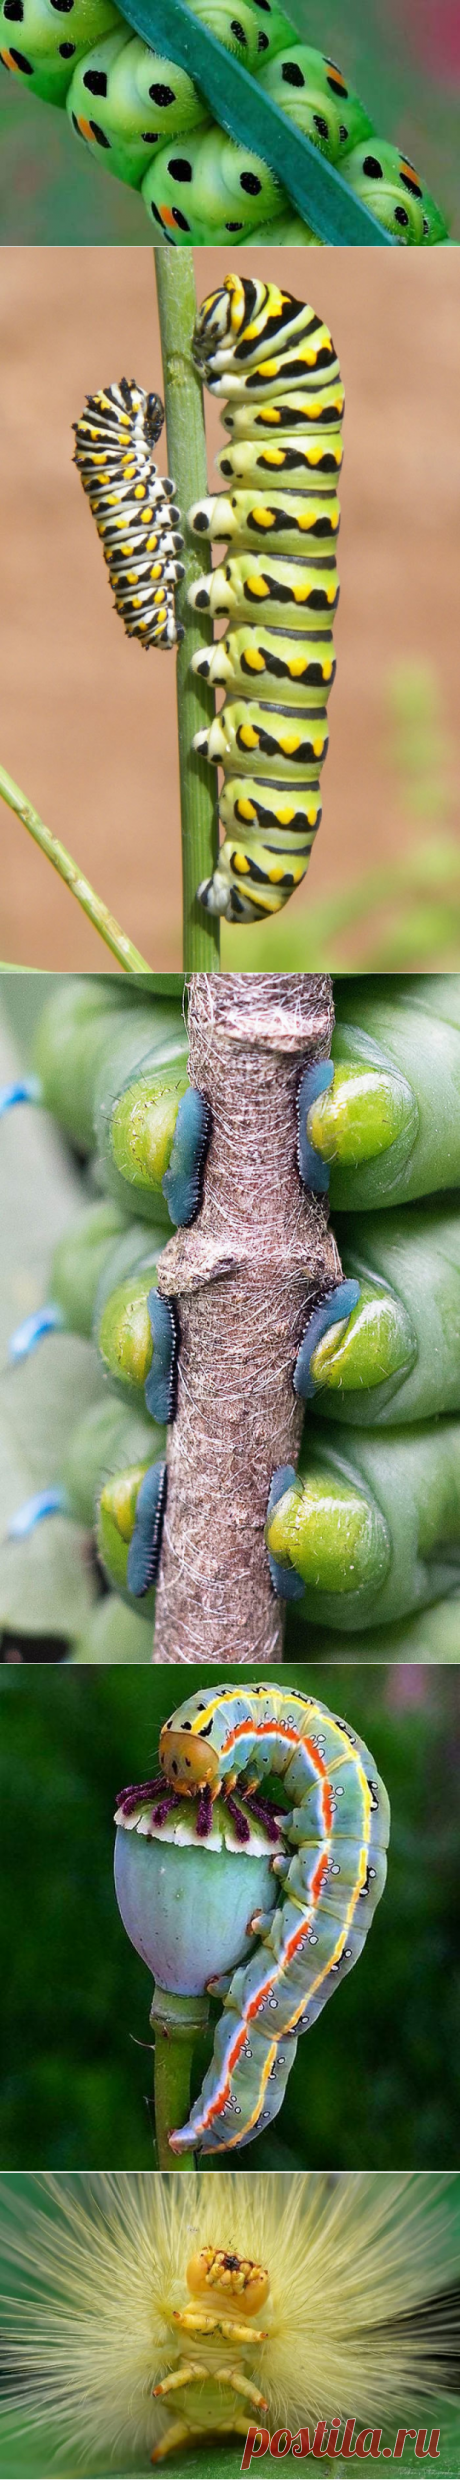 10 любопытных фото для тех, кто никогда не видел, насколько странные ноги у гусениц - ХОЧУ ВСЁ ЗНАТЬ - медиаплатформа МирТесен